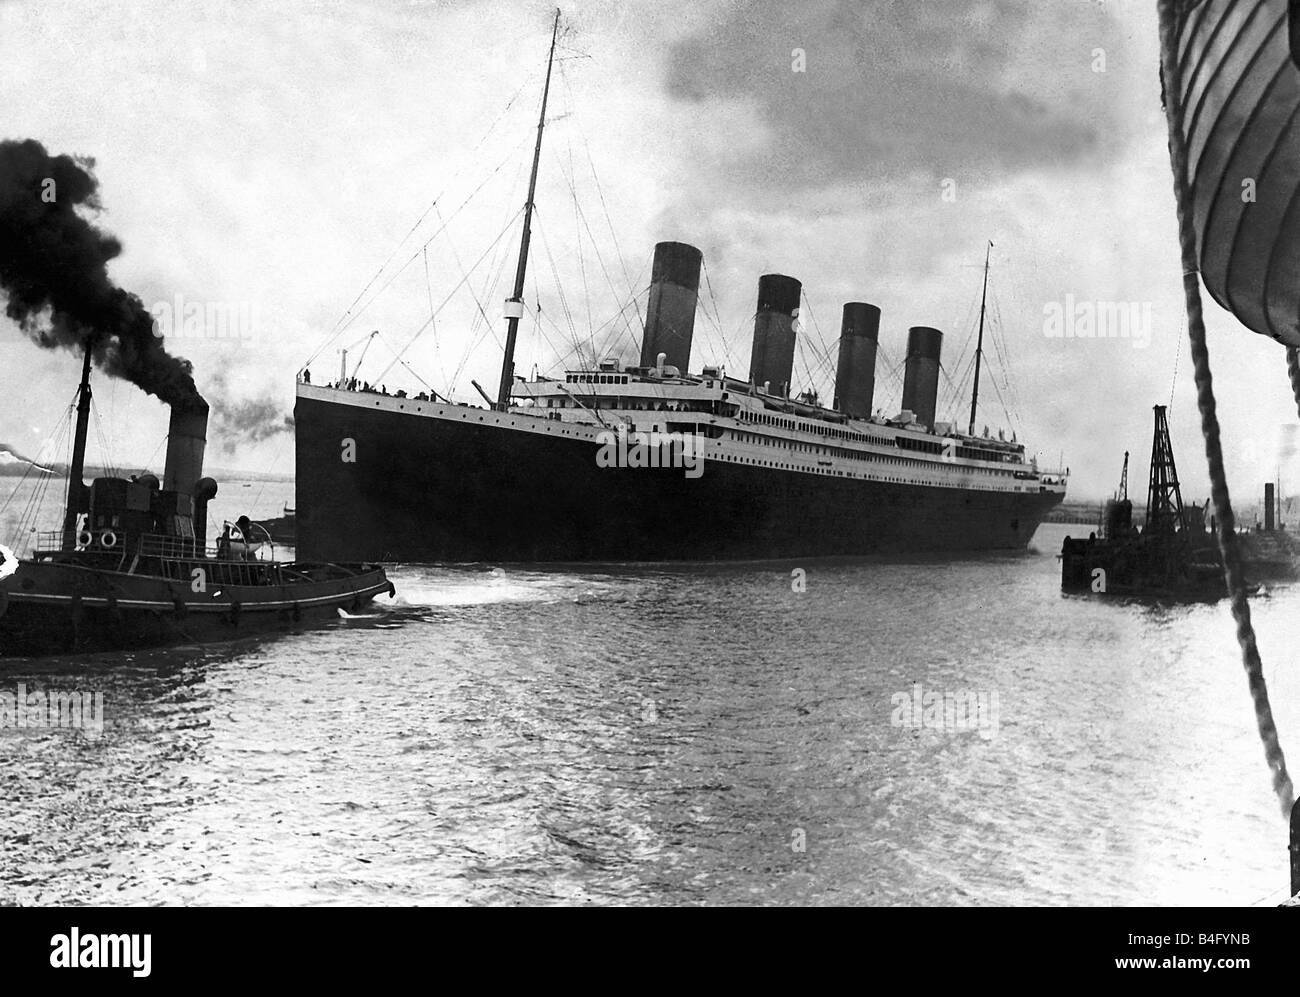 15. April 1912 der britischen Liner Titanic mit 2 224 Menschen drauf s transatlantischen Jungfernfahrt trifft südlich von Neufundland einen Eisberg und sinkt 1 53 sind verloren, für Mangel an genügend Rettungsboote zu diesem Tag bleibt die berüchtigsten Tragödie auf See die Katastrophe hervorgebracht hat, unzählige Bücher Artikel und unnötig mehr als ein paar Filme der bekanntesten sagen der James Cameron s Titanic war nicht unbedingt die beste, aber die erfolgreichsten des Genres Stockfoto